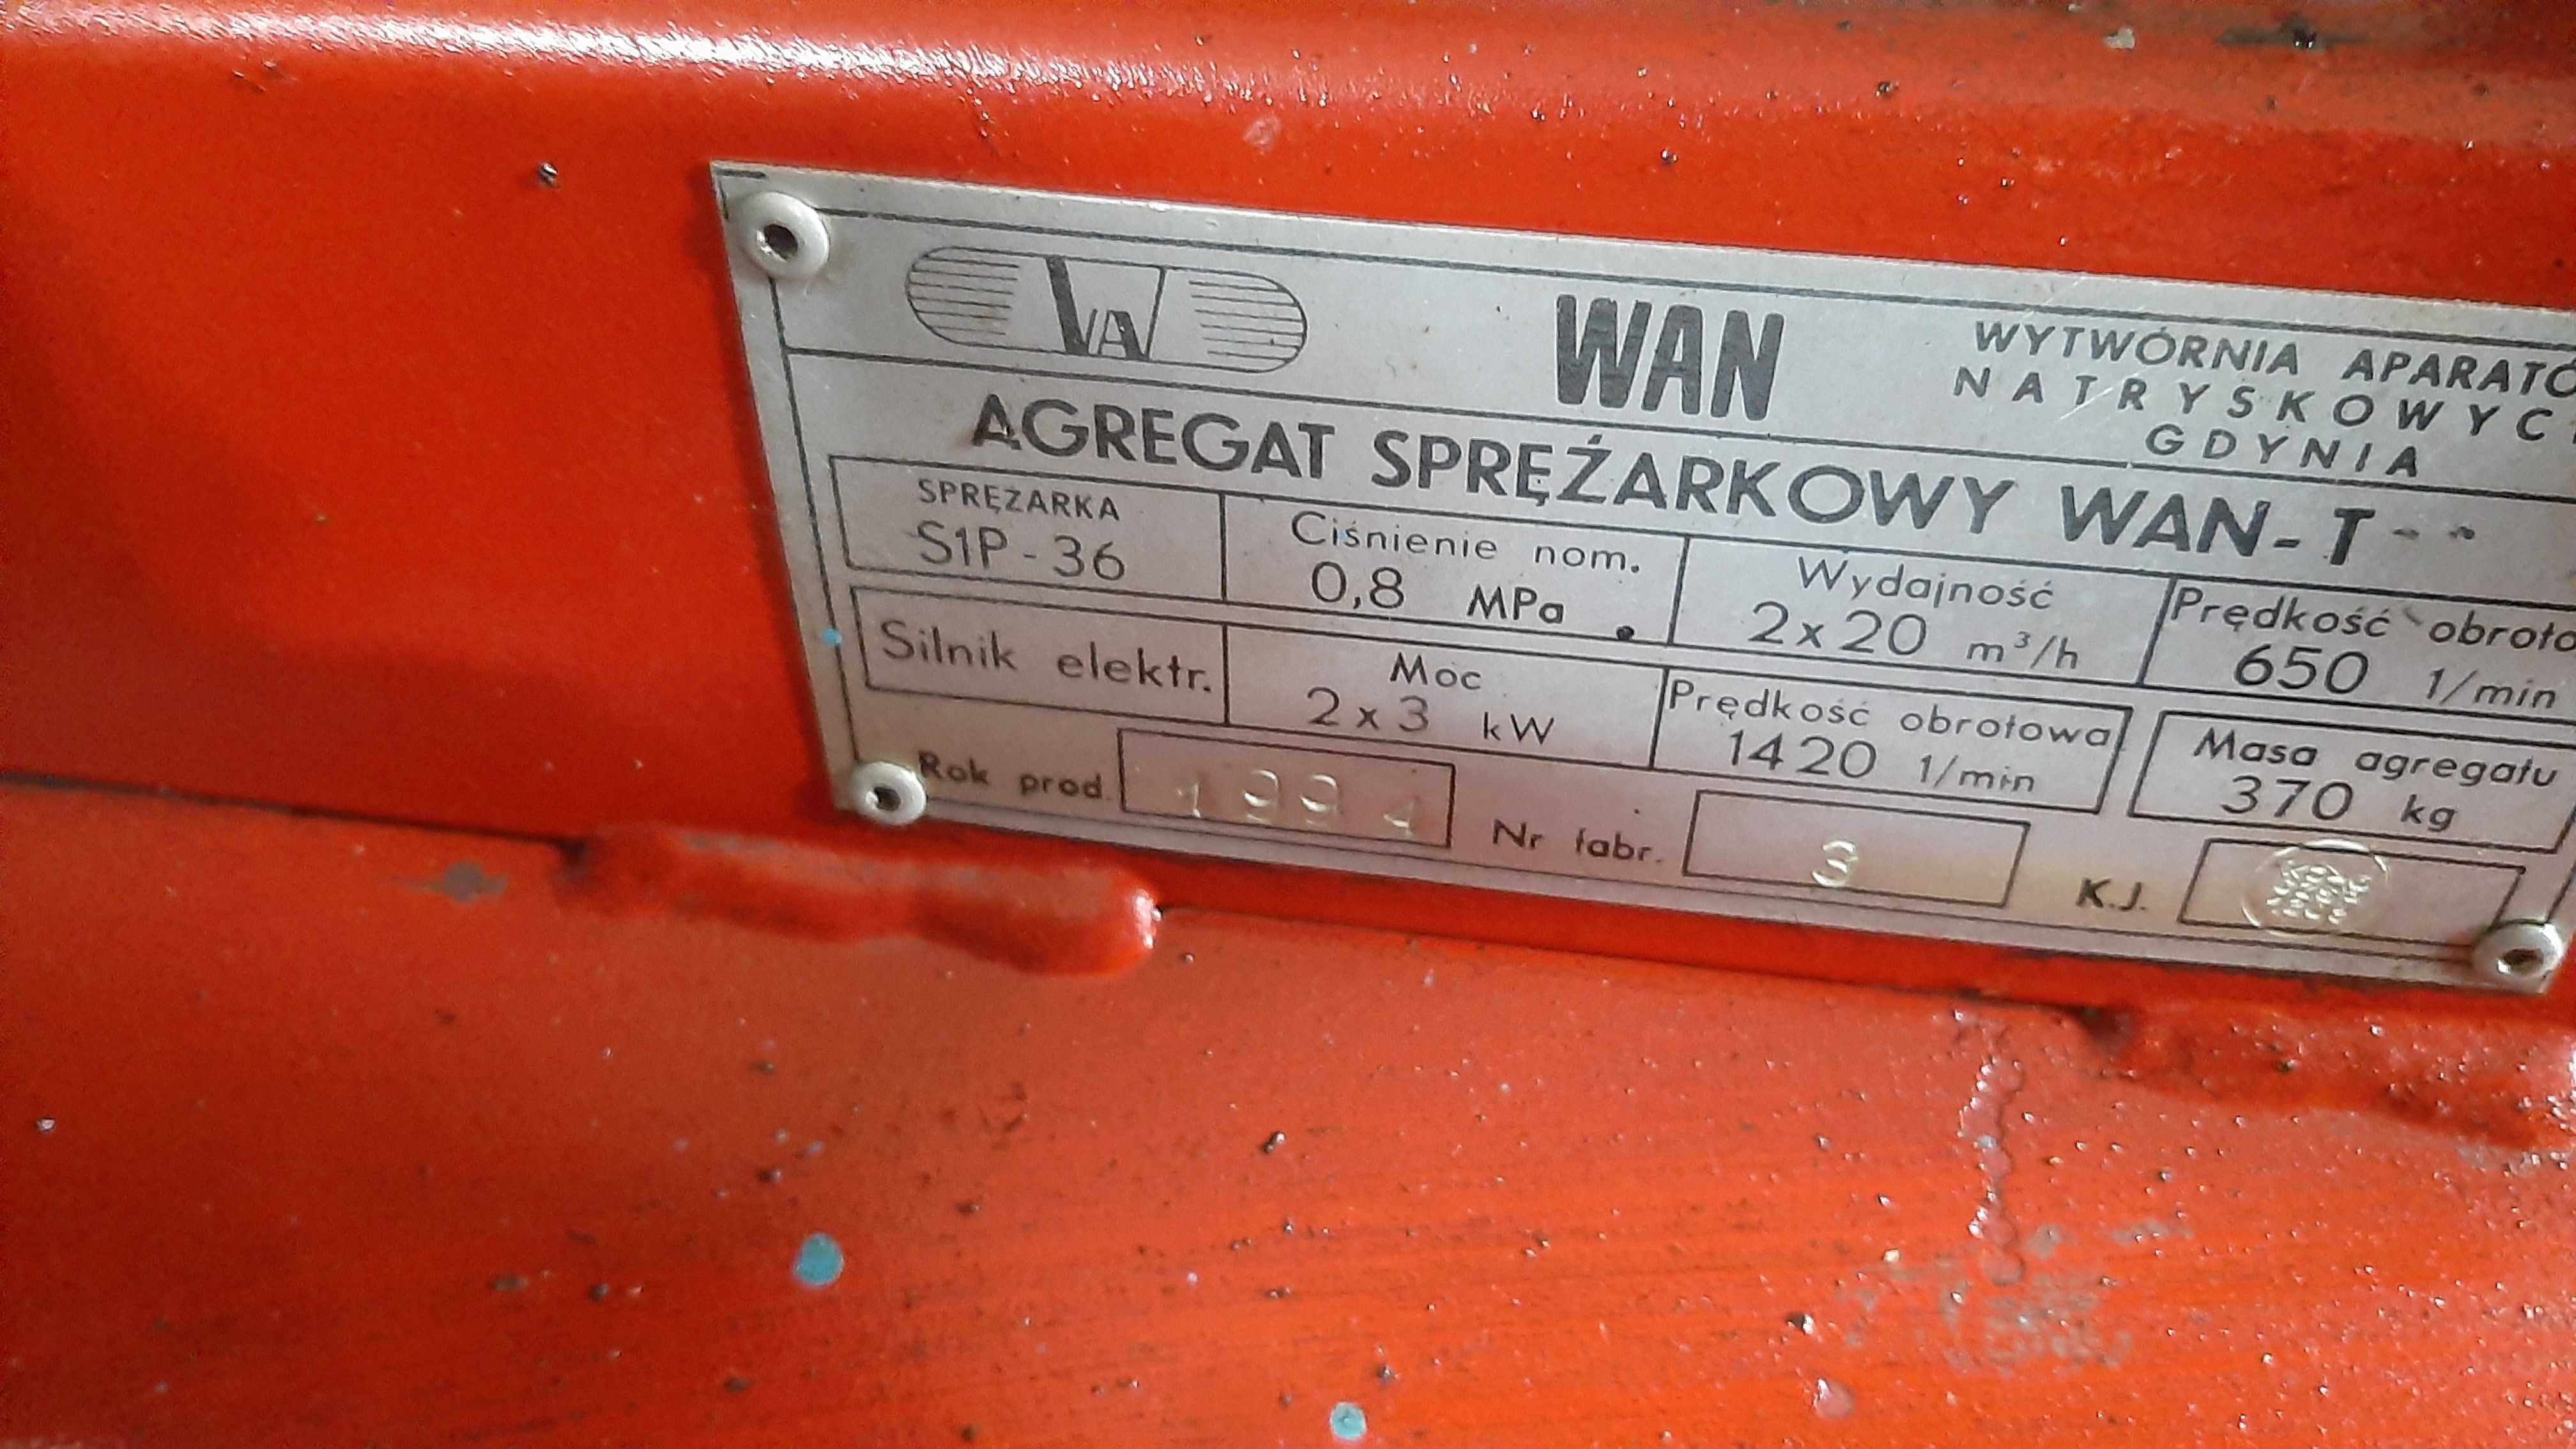 Agregat sprezarkow Wan -T 2 x 3kw 415l.